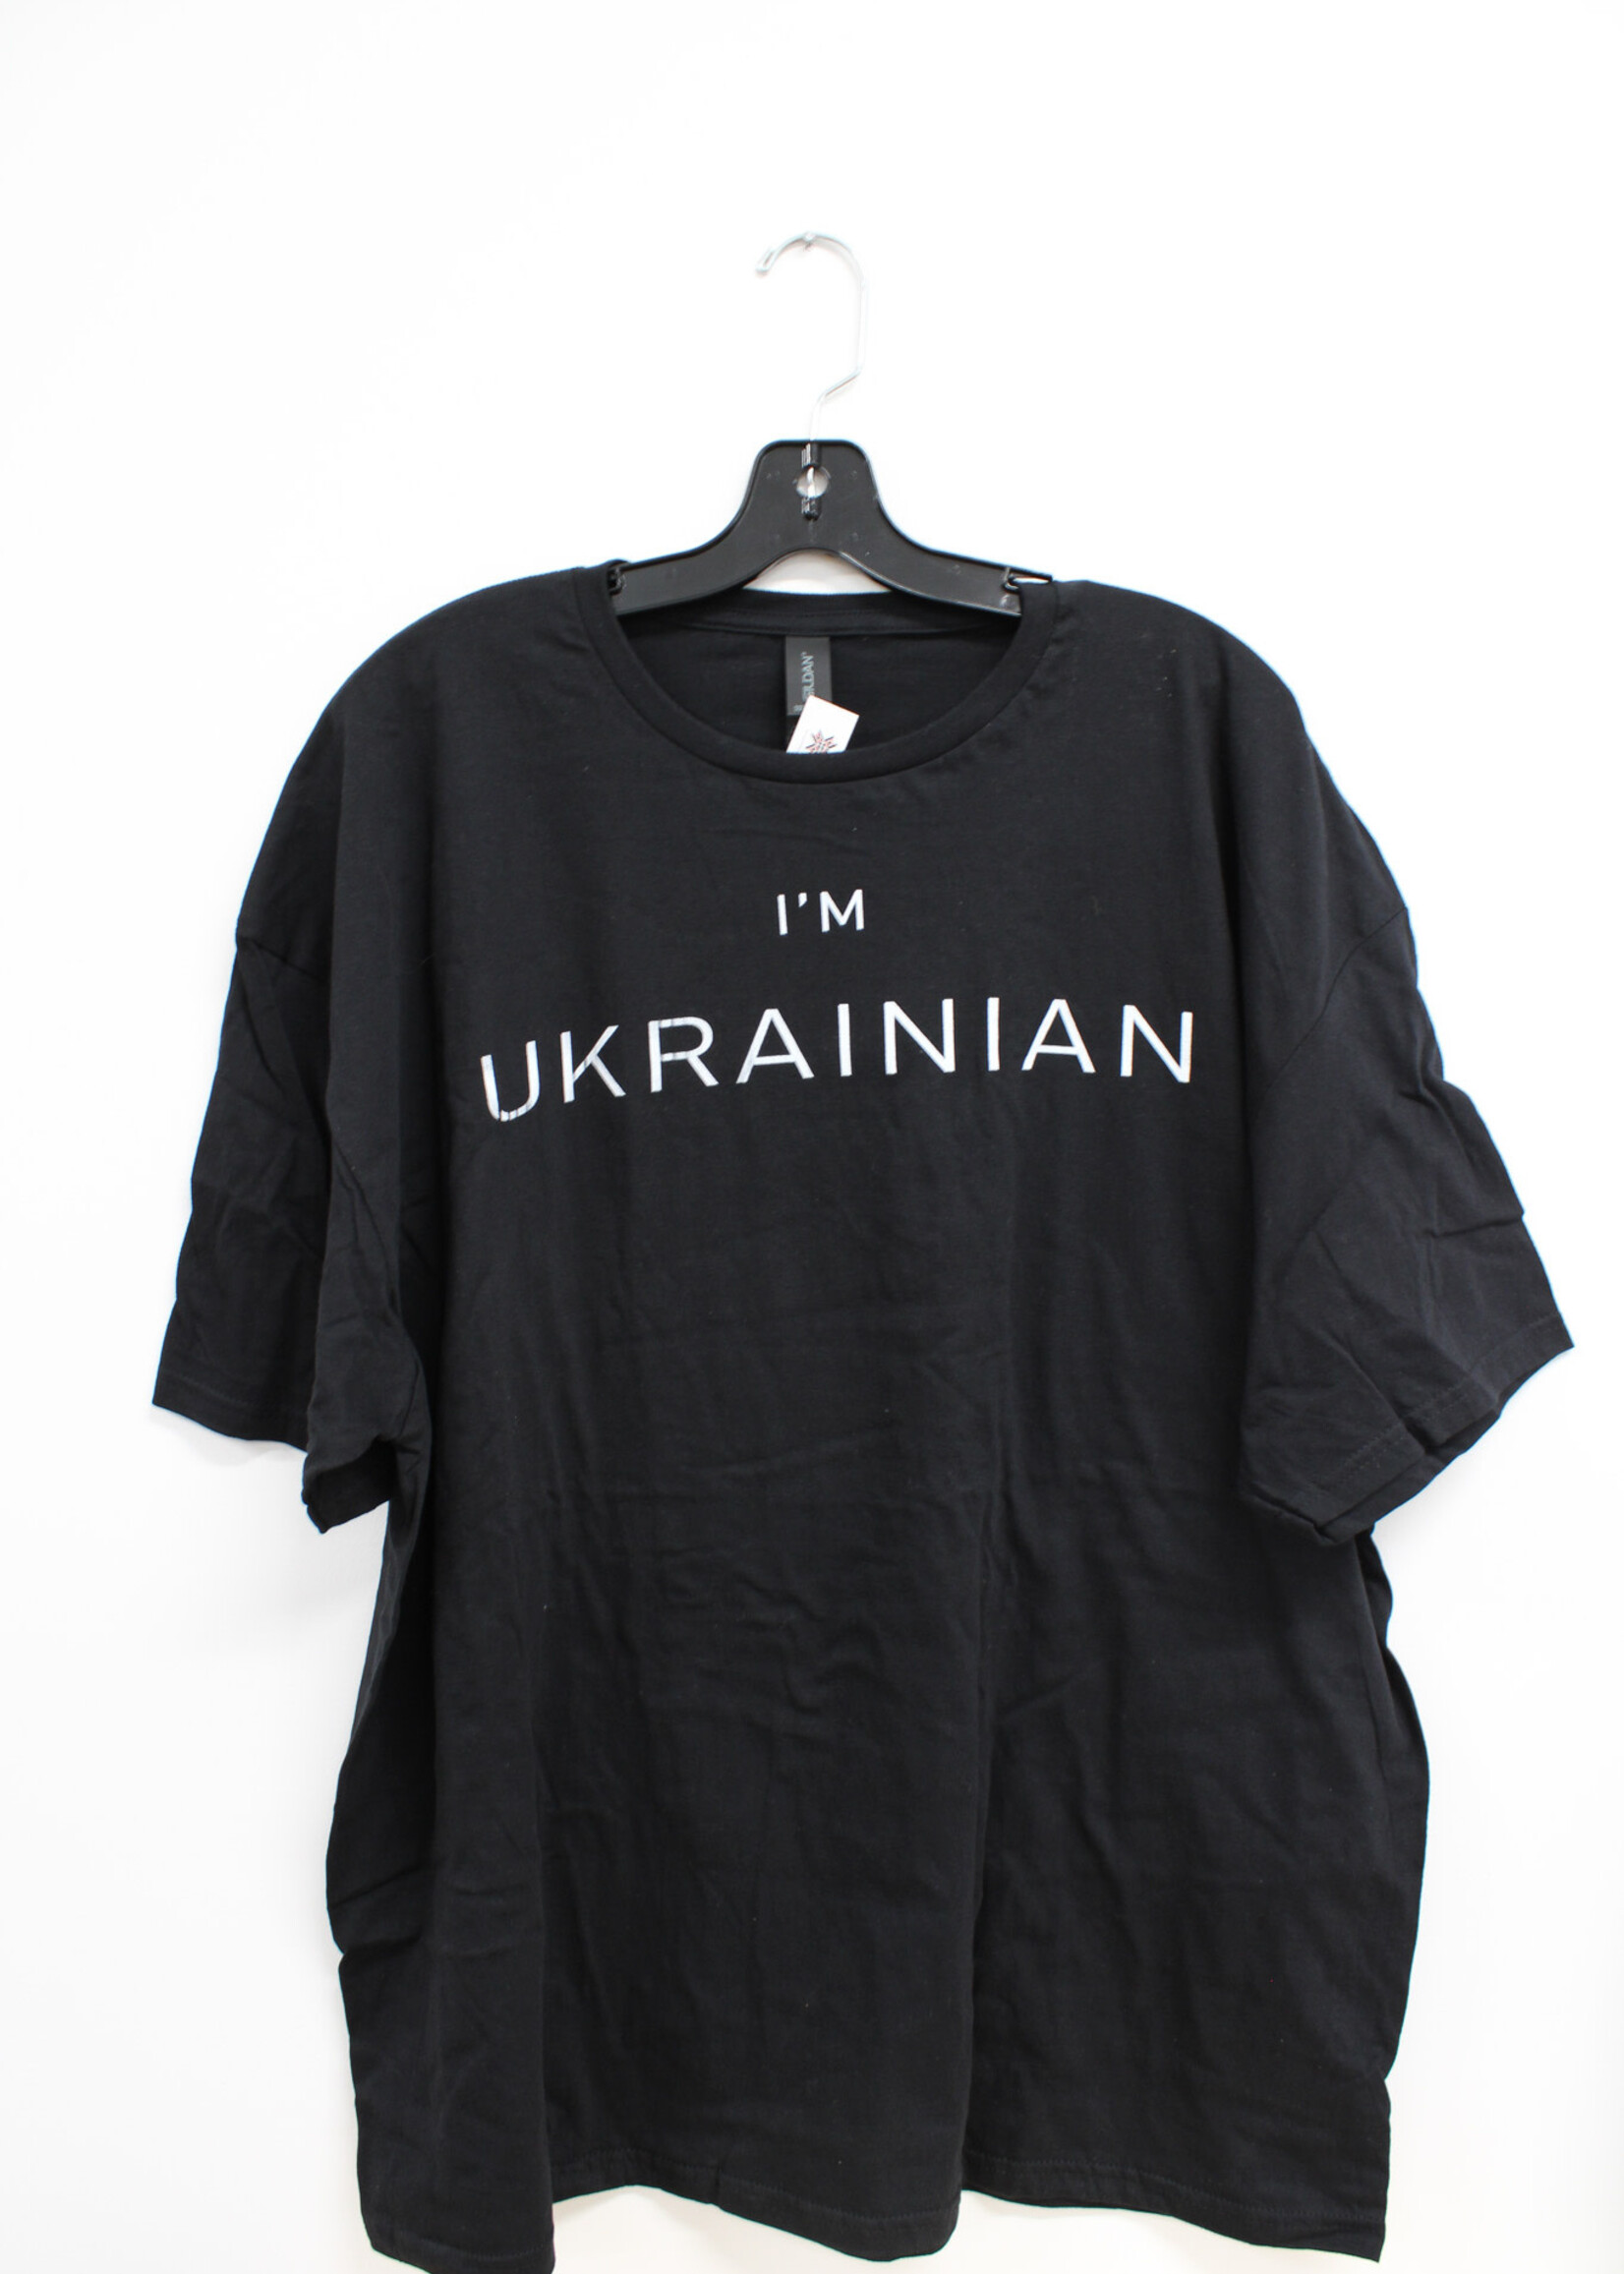 APPAREL - T-shirt (W), I'm Ukrainian